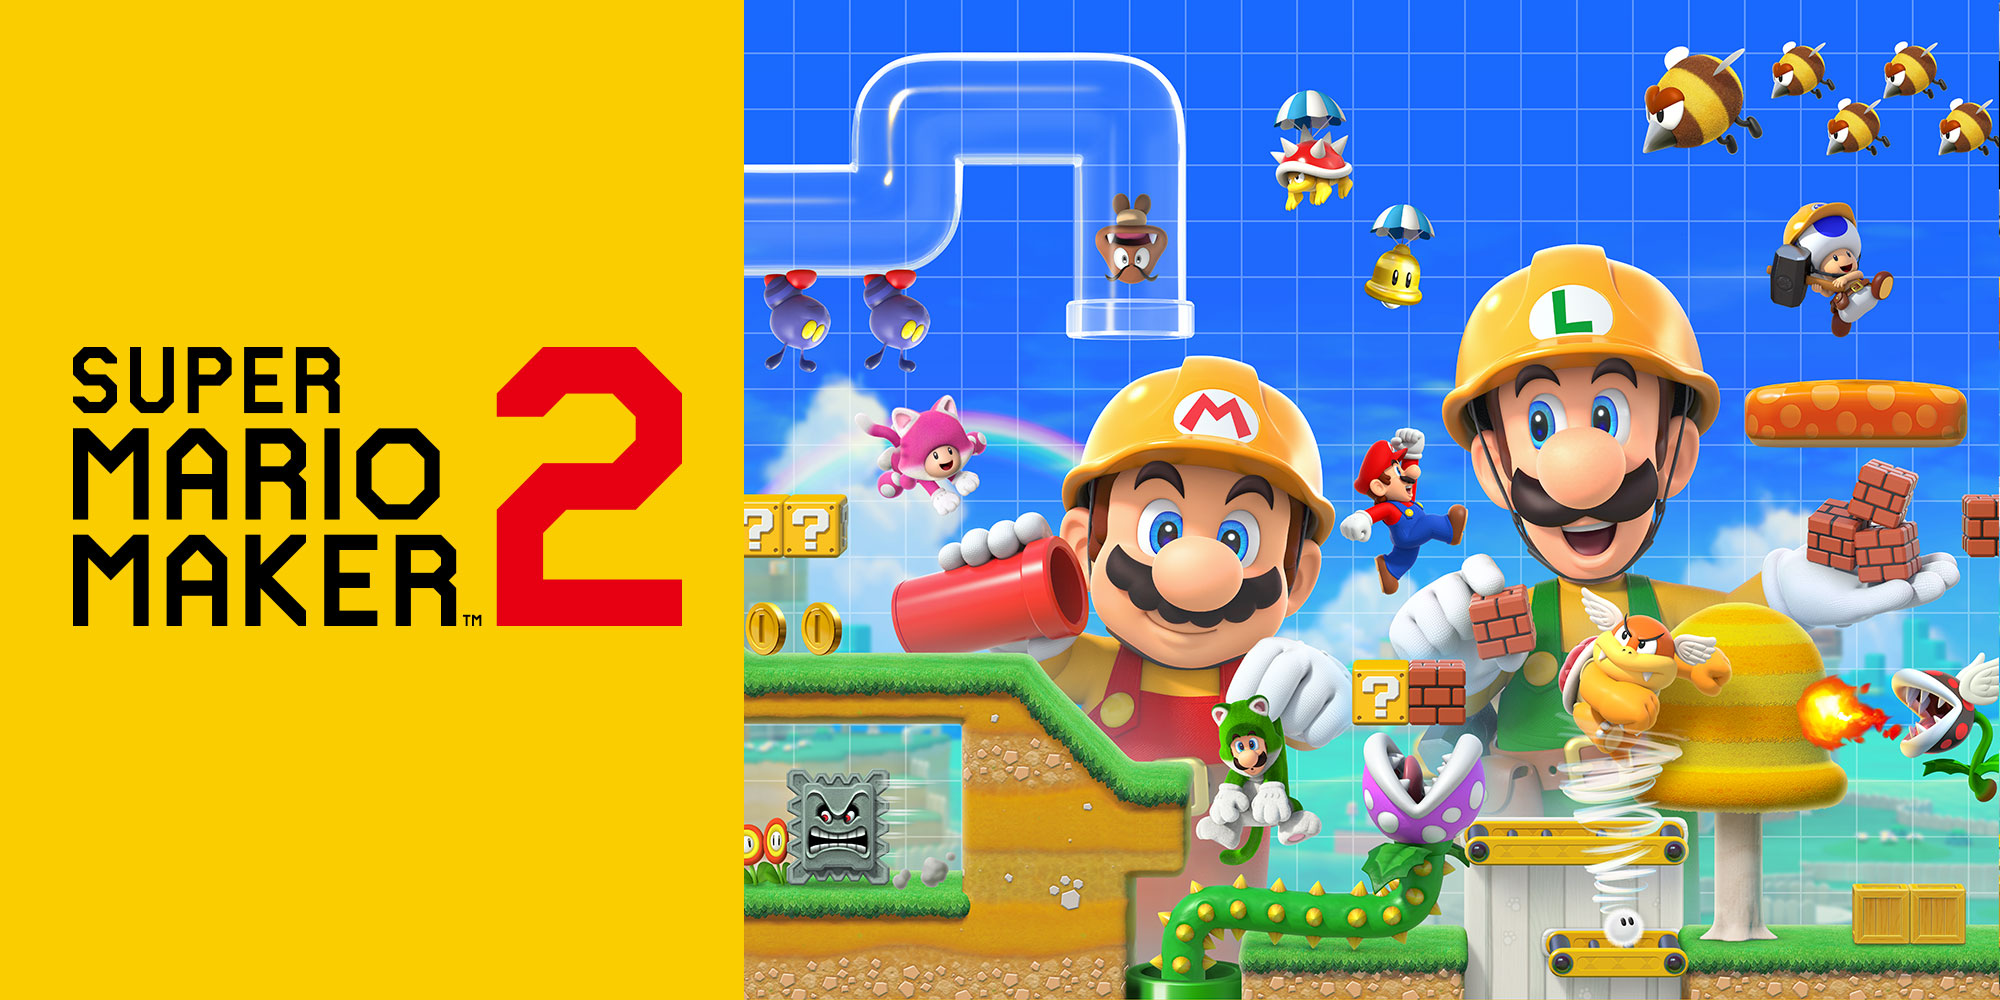 Esplendor Oficial sistemático Super Mario Maker 2 | Juegos de Nintendo Switch | Juegos | Nintendo